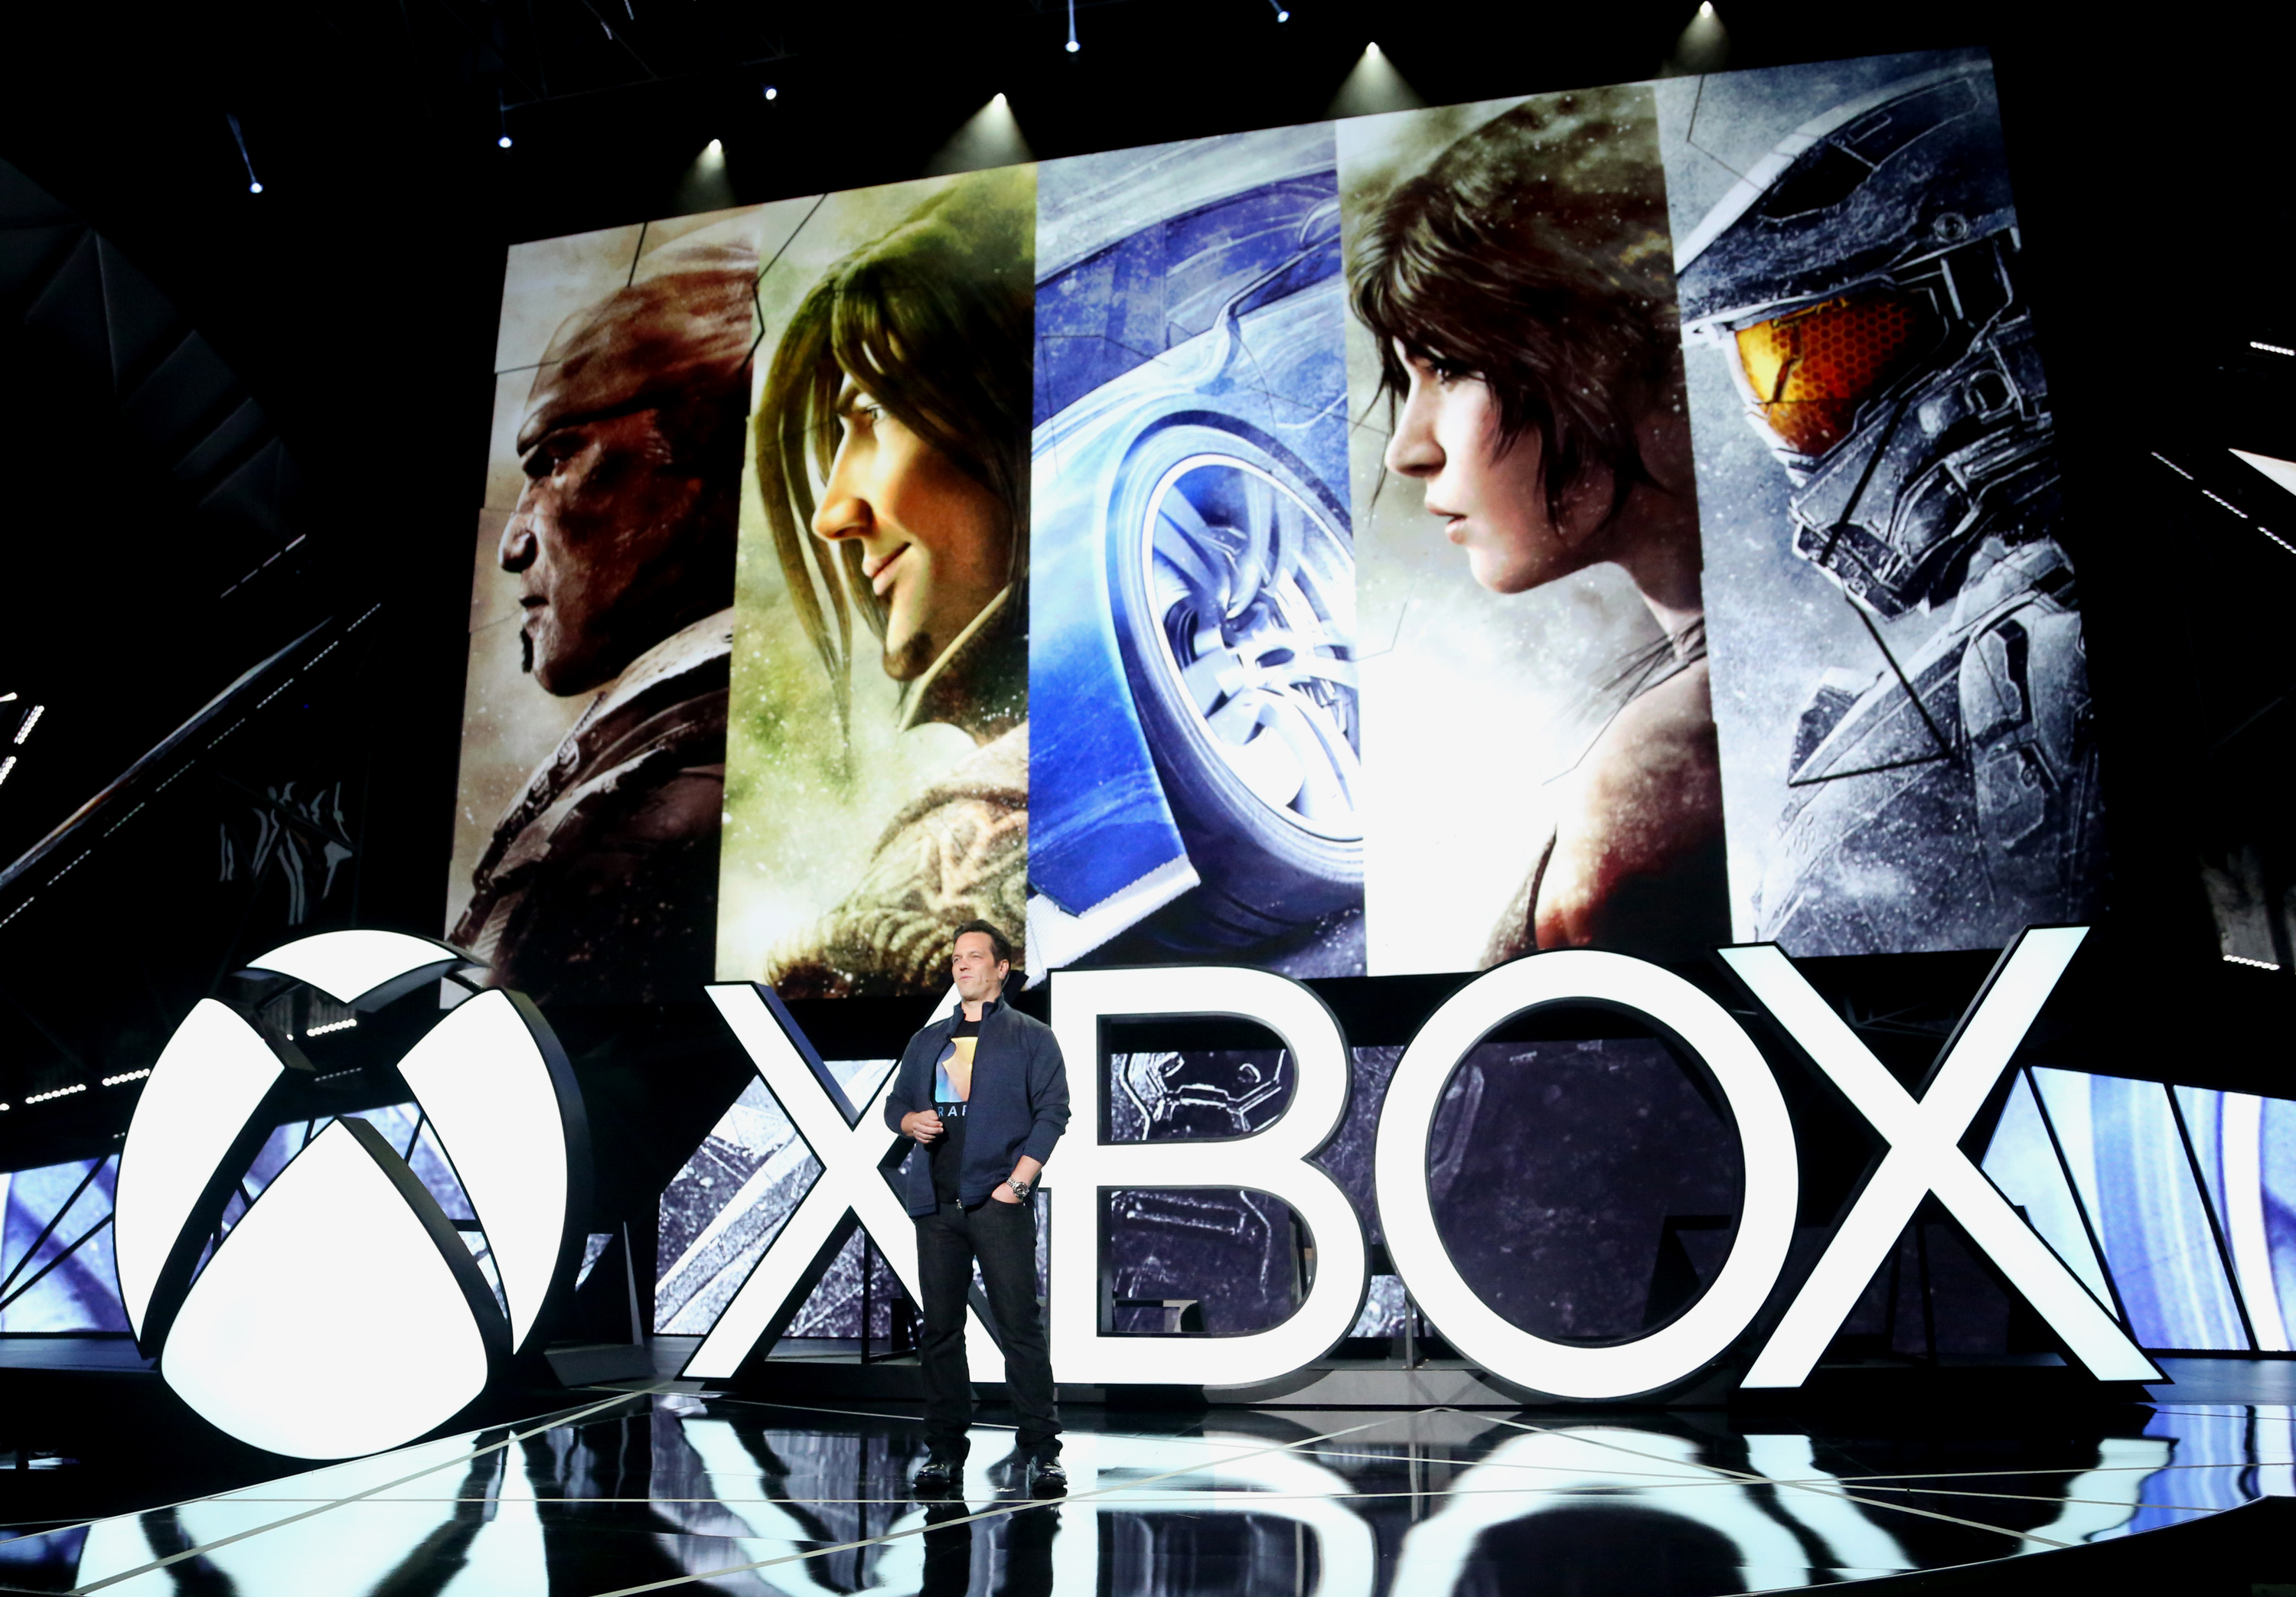 Dark Souls e Halo estão entre os jogos grátis da Xbox Live para junho